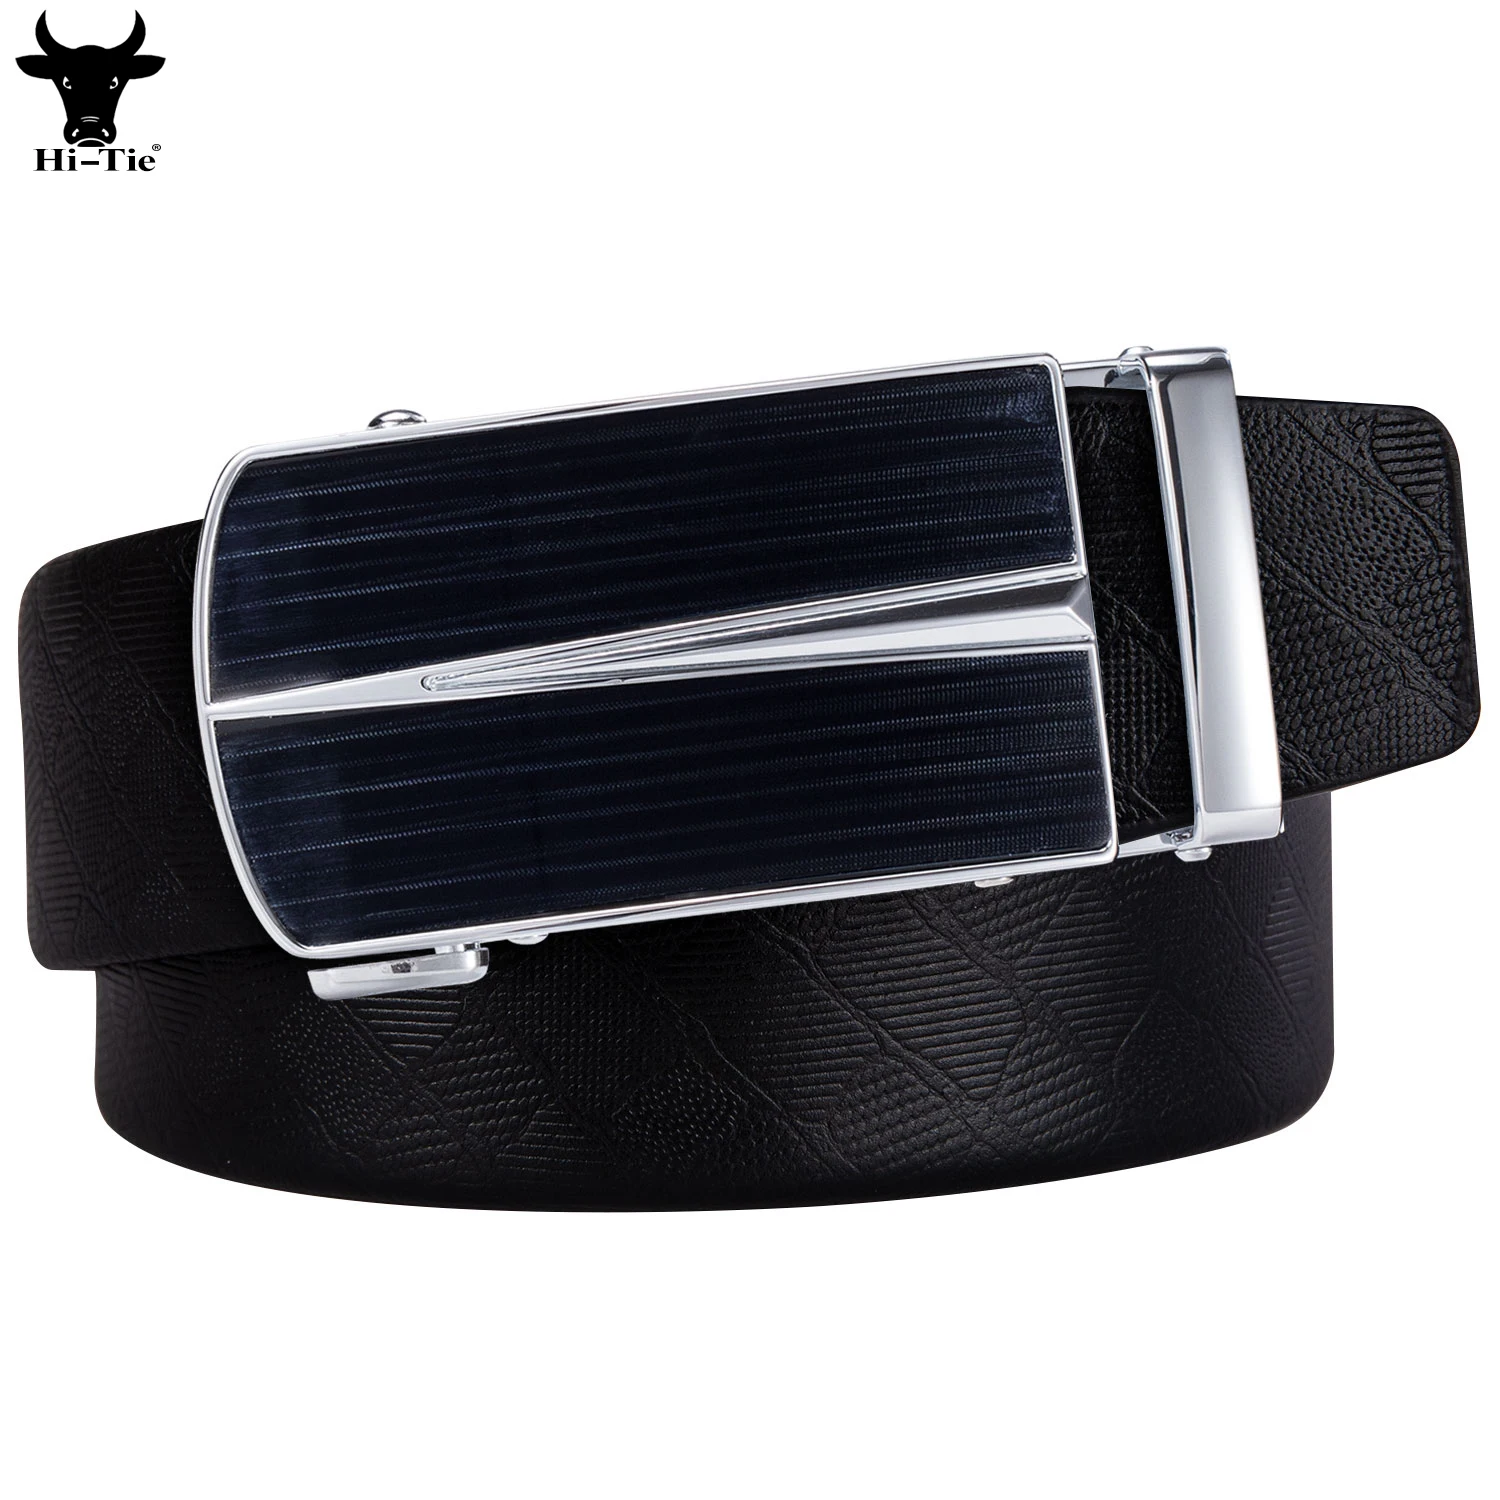 Hi-Tie Designer Black Genuine Leather Mens Belts Black Silver Automatic Buckles Ratchet Waistband Belt for Men Dress Jeans Gift